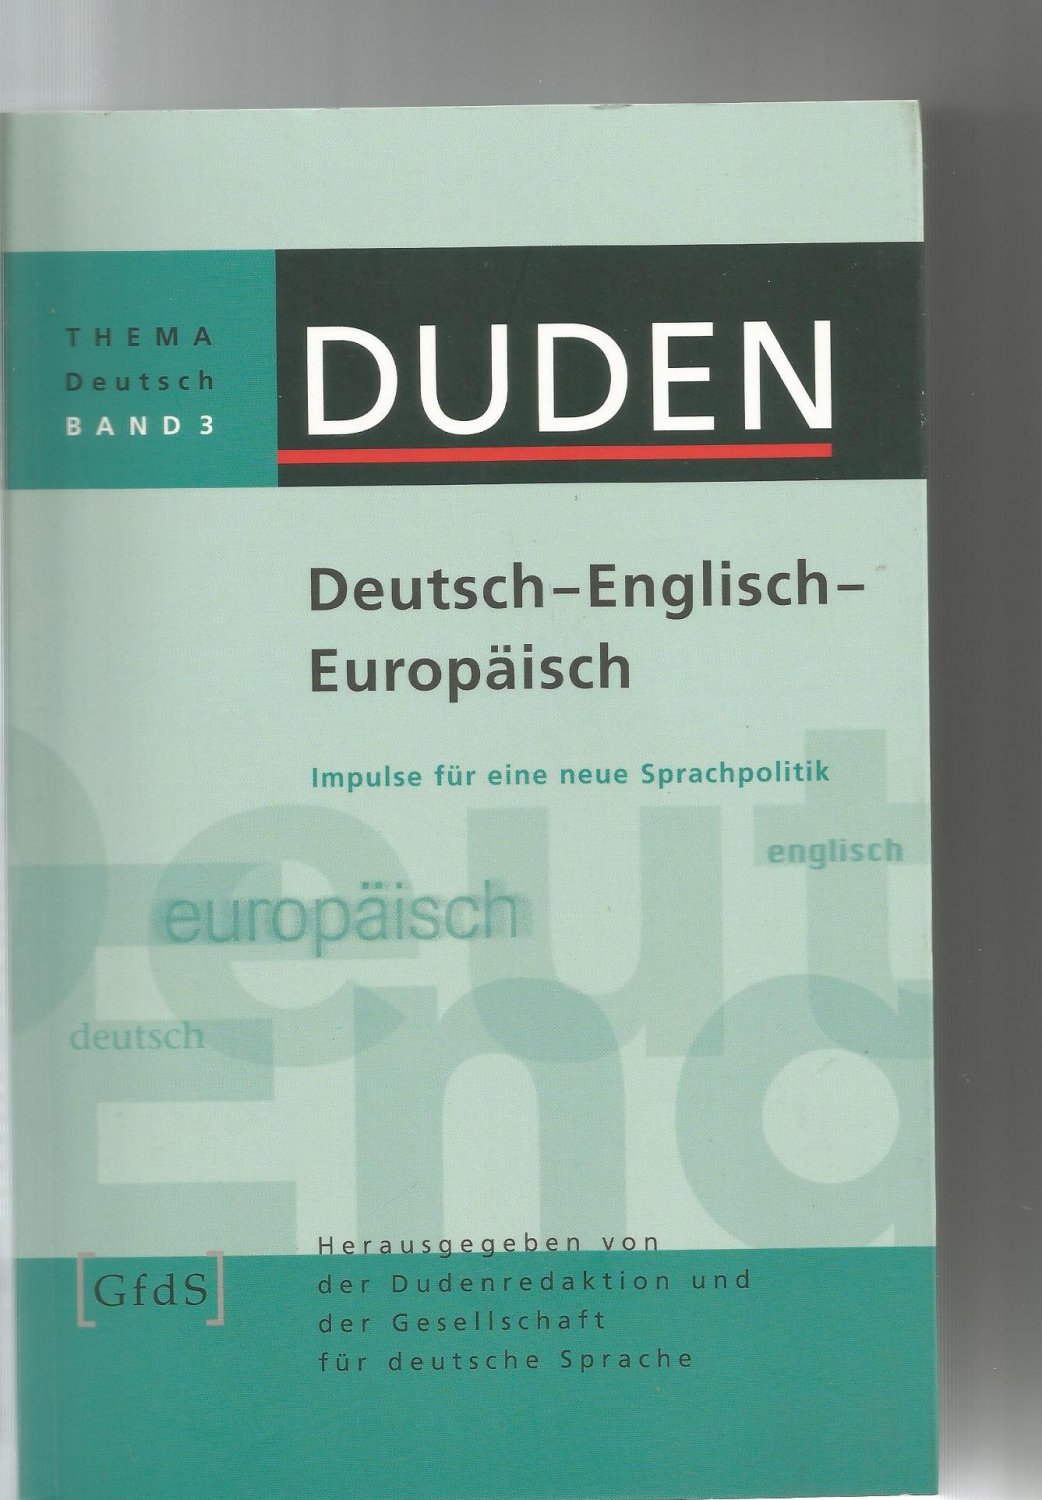 Duden Thema Deutsch Deutsch Englisch Europaisch Dudenredaktion Gesellschaft F Buch Gebraucht Kaufen A02jz5sz01zz9